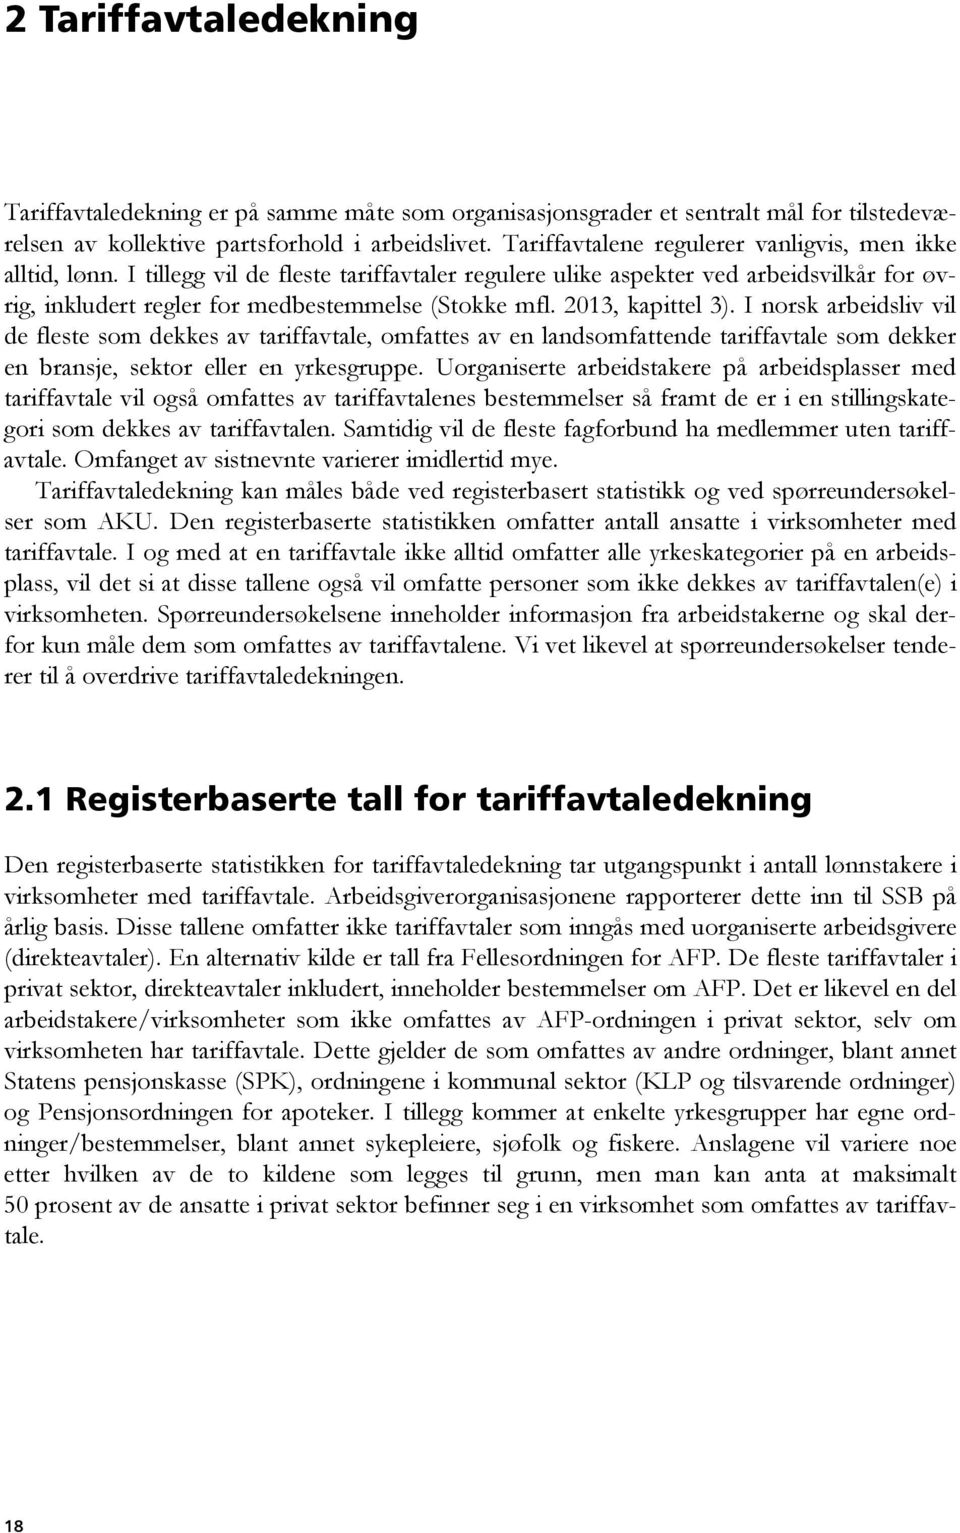 2013, kapittel 3). I norsk arbeidsliv vil de fleste som dekkes av tariffavtale, omfattes av en landsomfattende tariffavtale som dekker en bransje, sektor eller en yrkesgruppe.